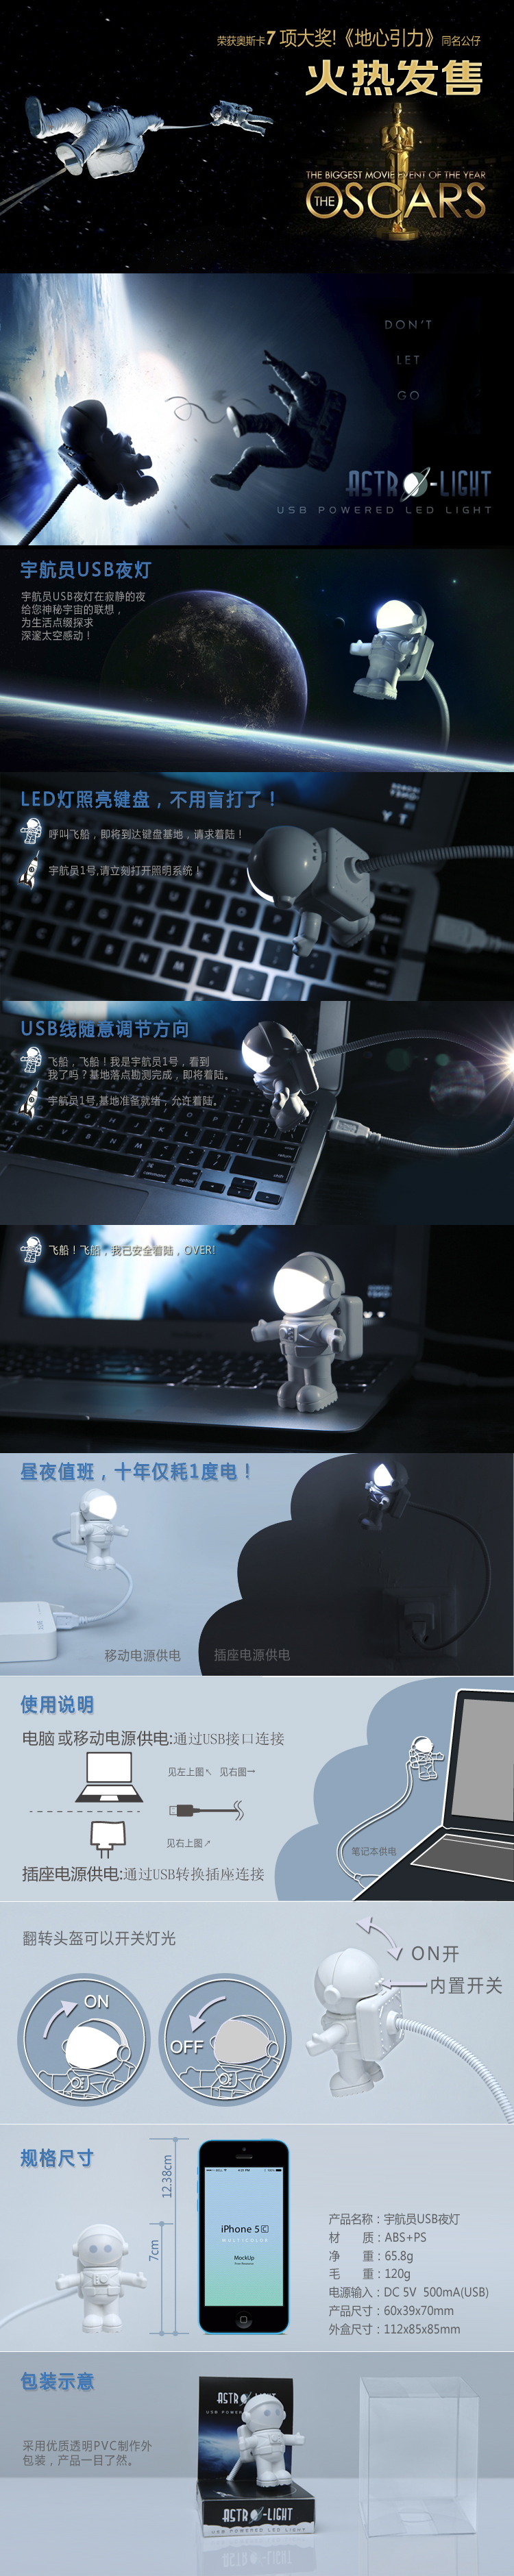 WEB-宇航员USB夜灯.jpg